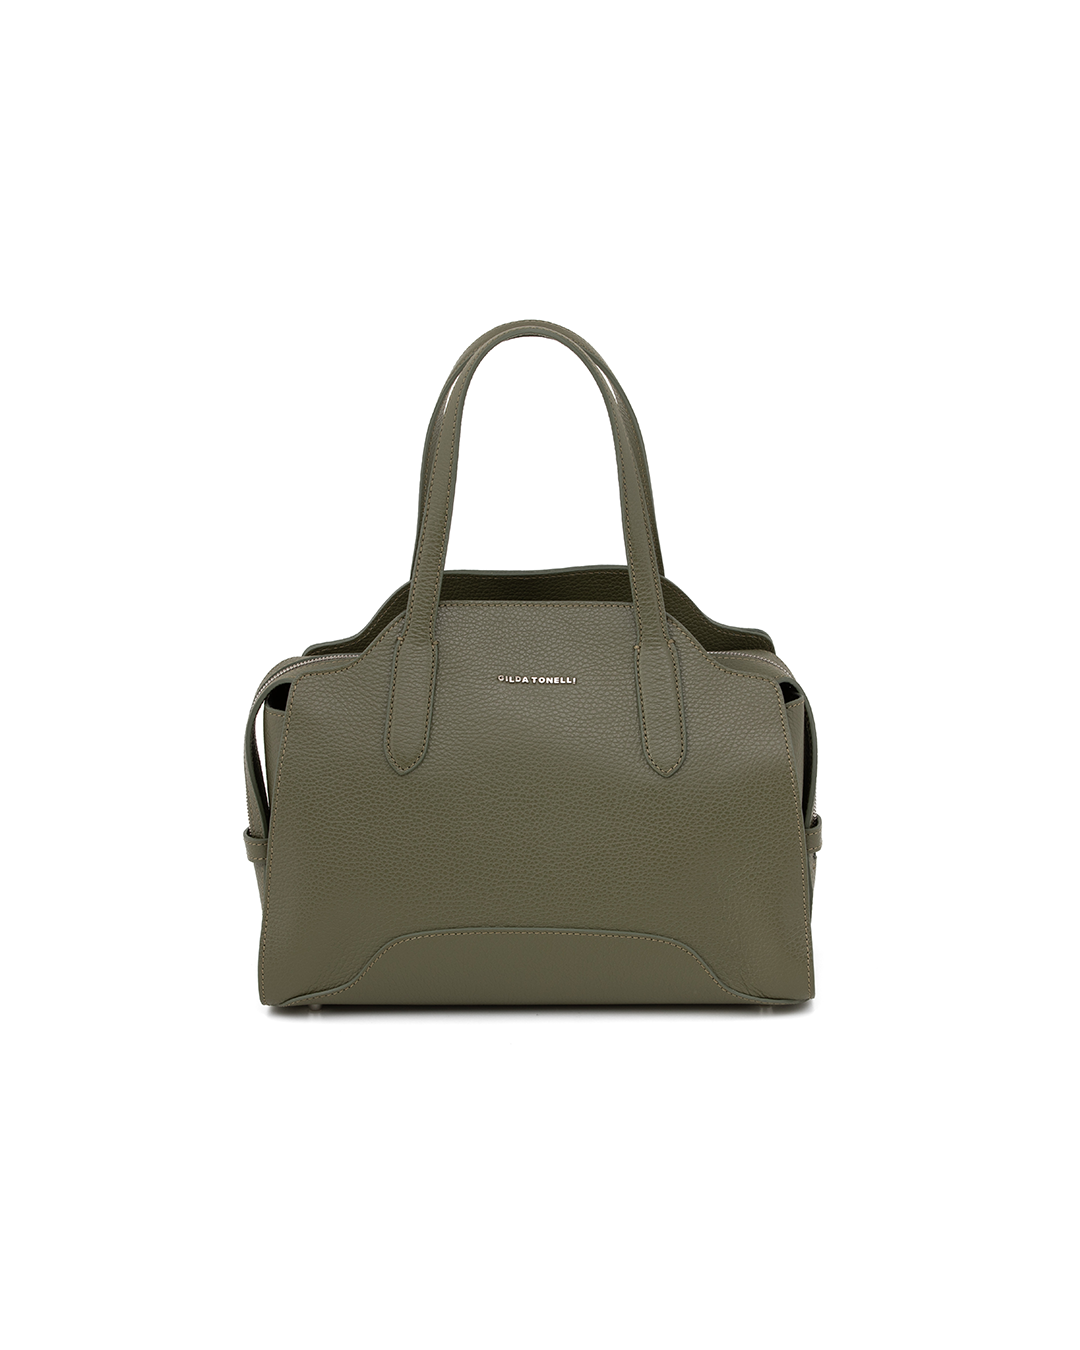 Gilda Tonelli - Essential Bag